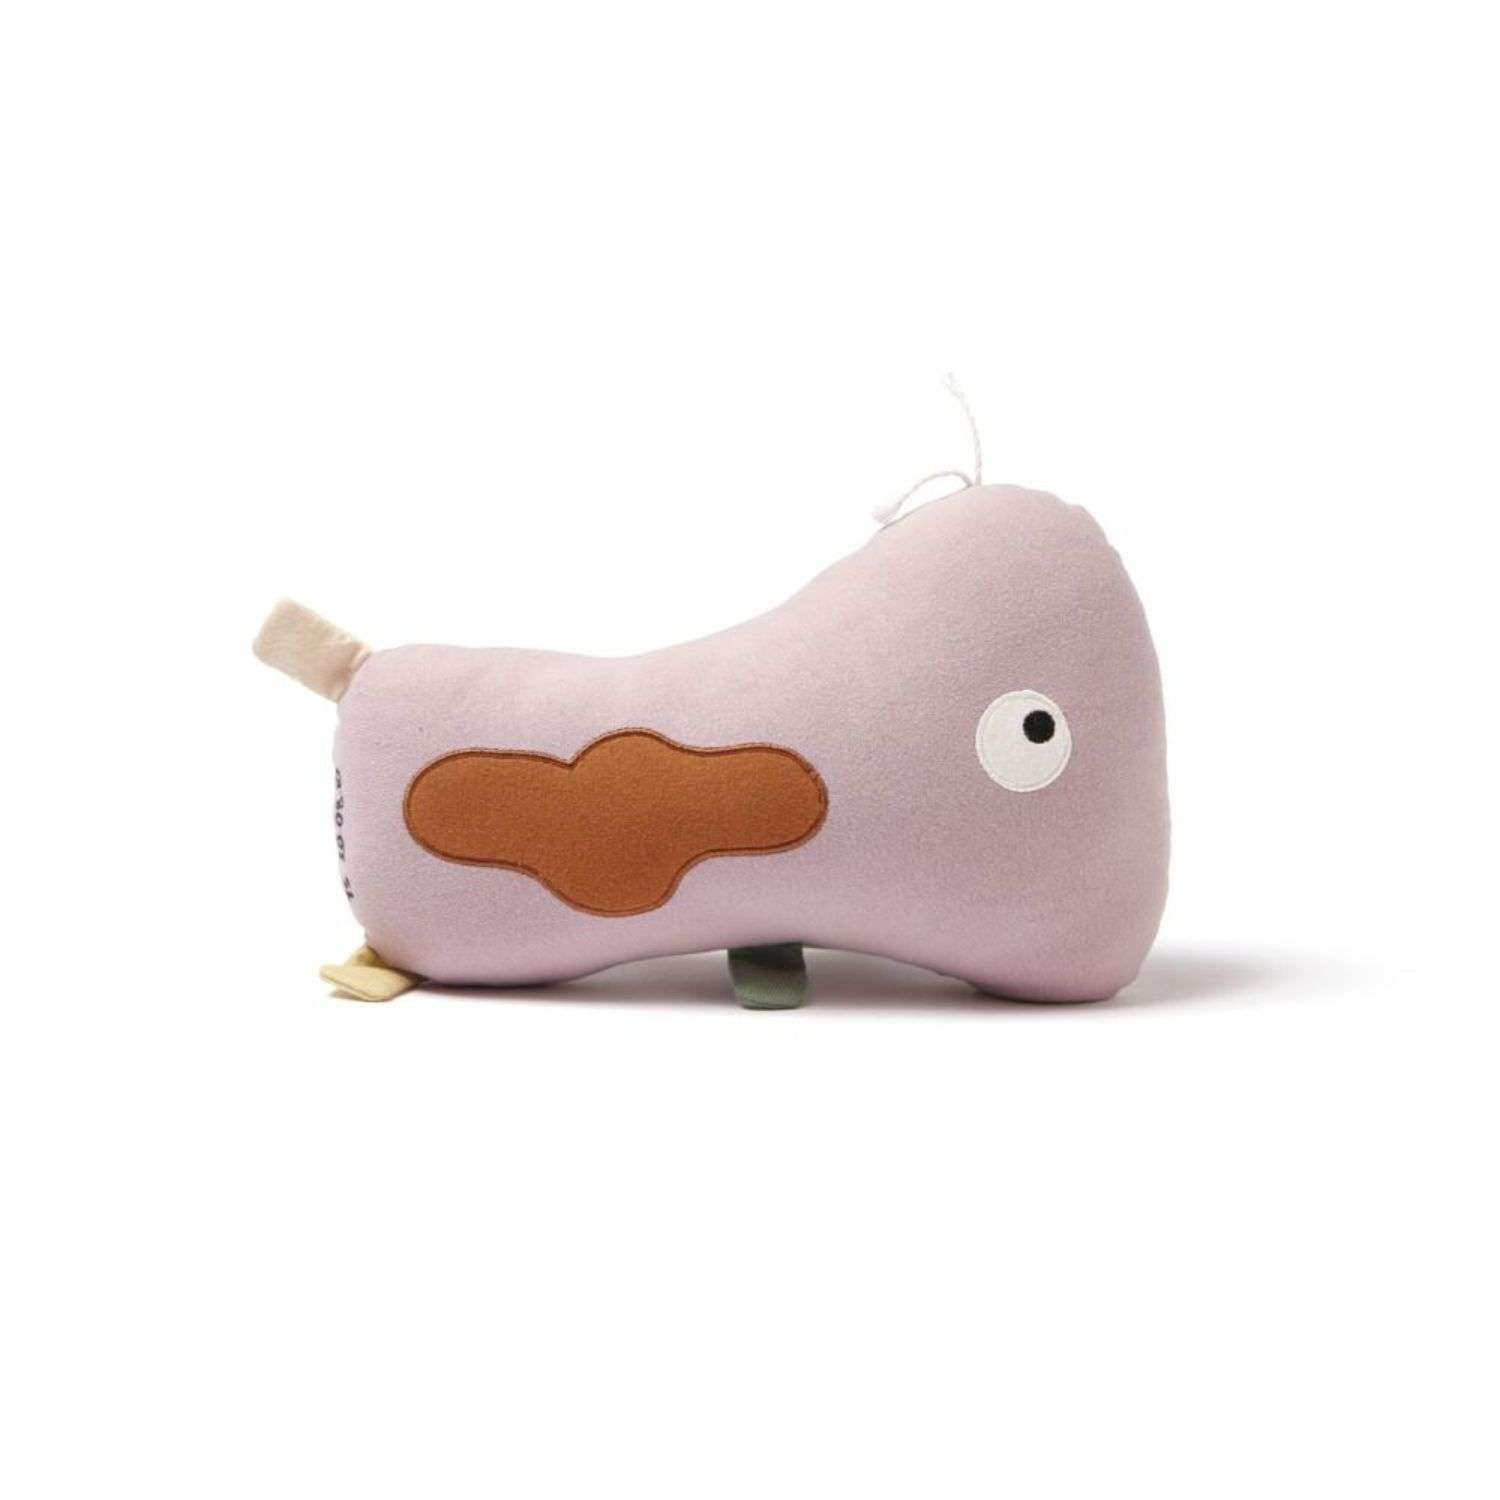 Мягкая игрушка Kids concept Микроб LaCilla розовая - фото 2